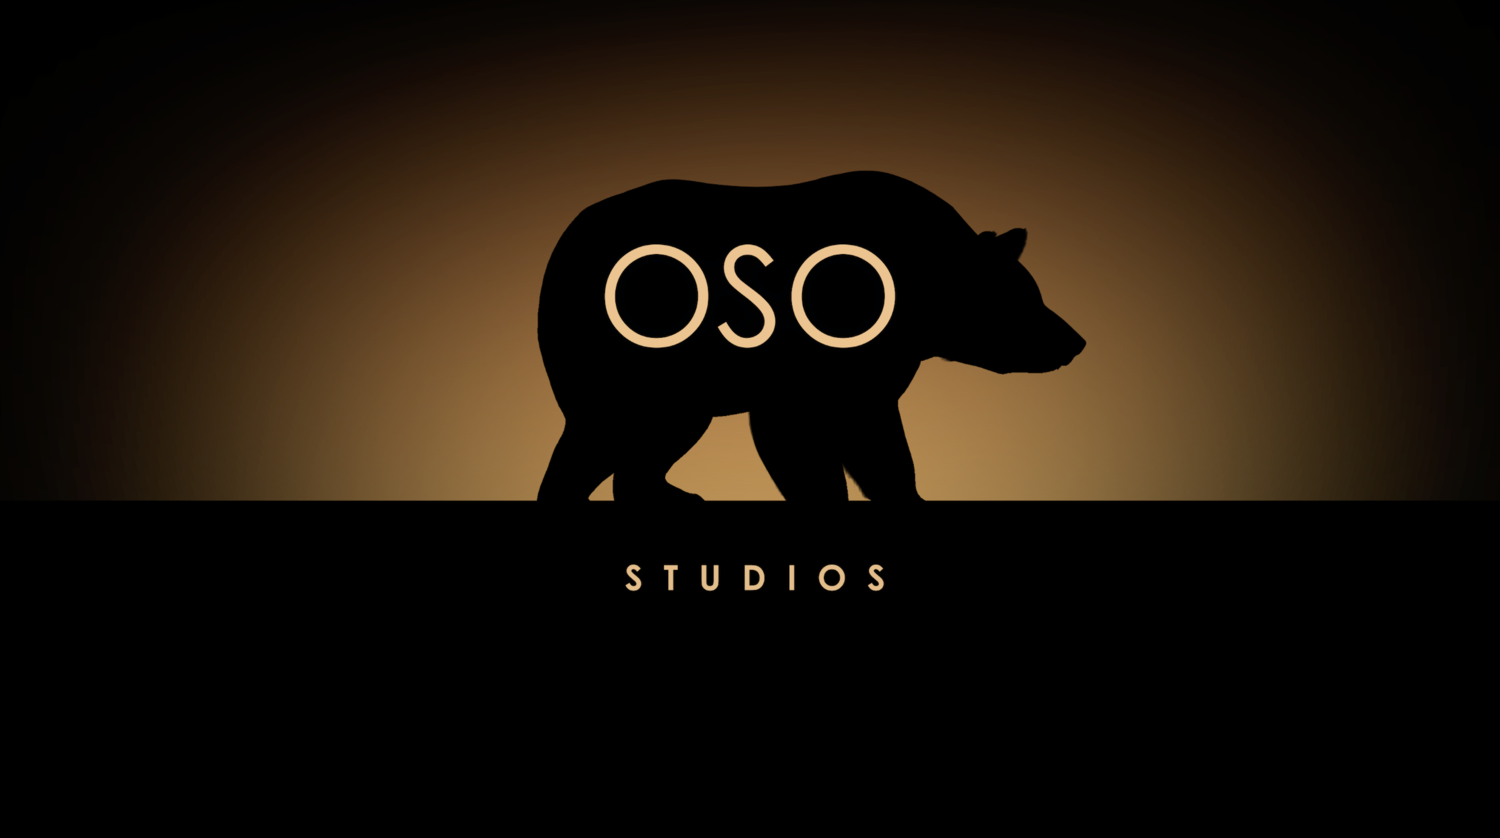 OSO Studios